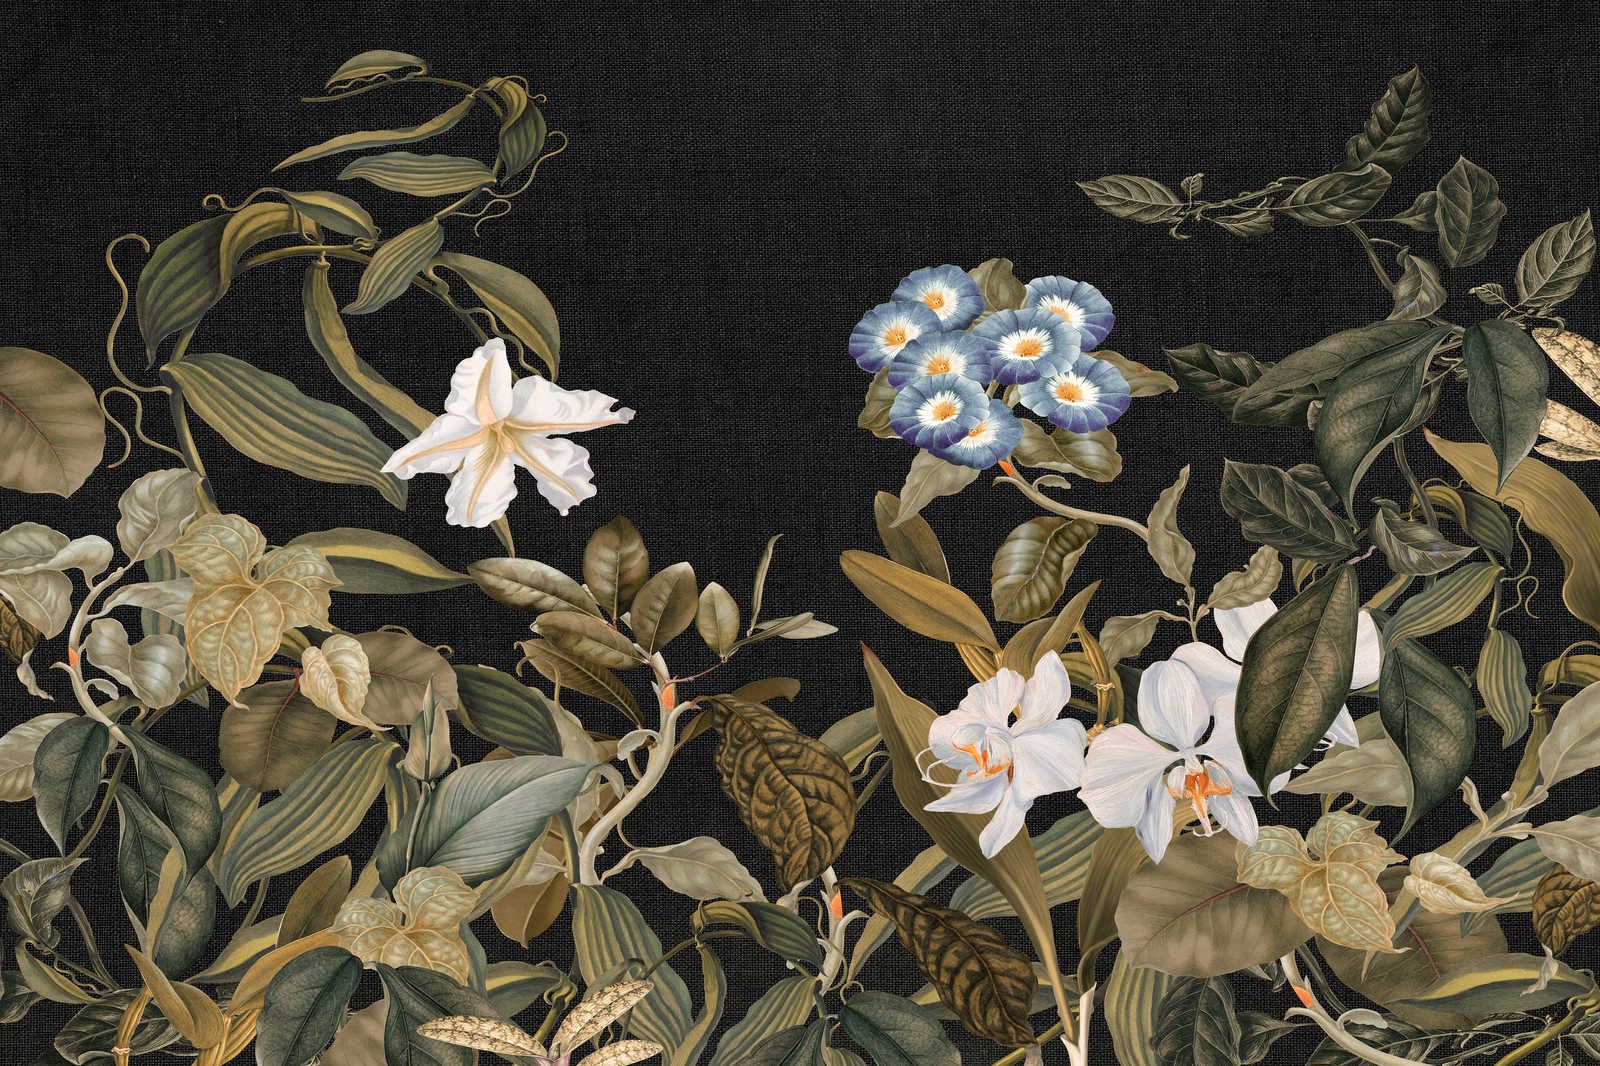             Botanisch Canvas Schilderij met Orchideeën & Bladeren Motief - 0,90 m x 0,60 m
        